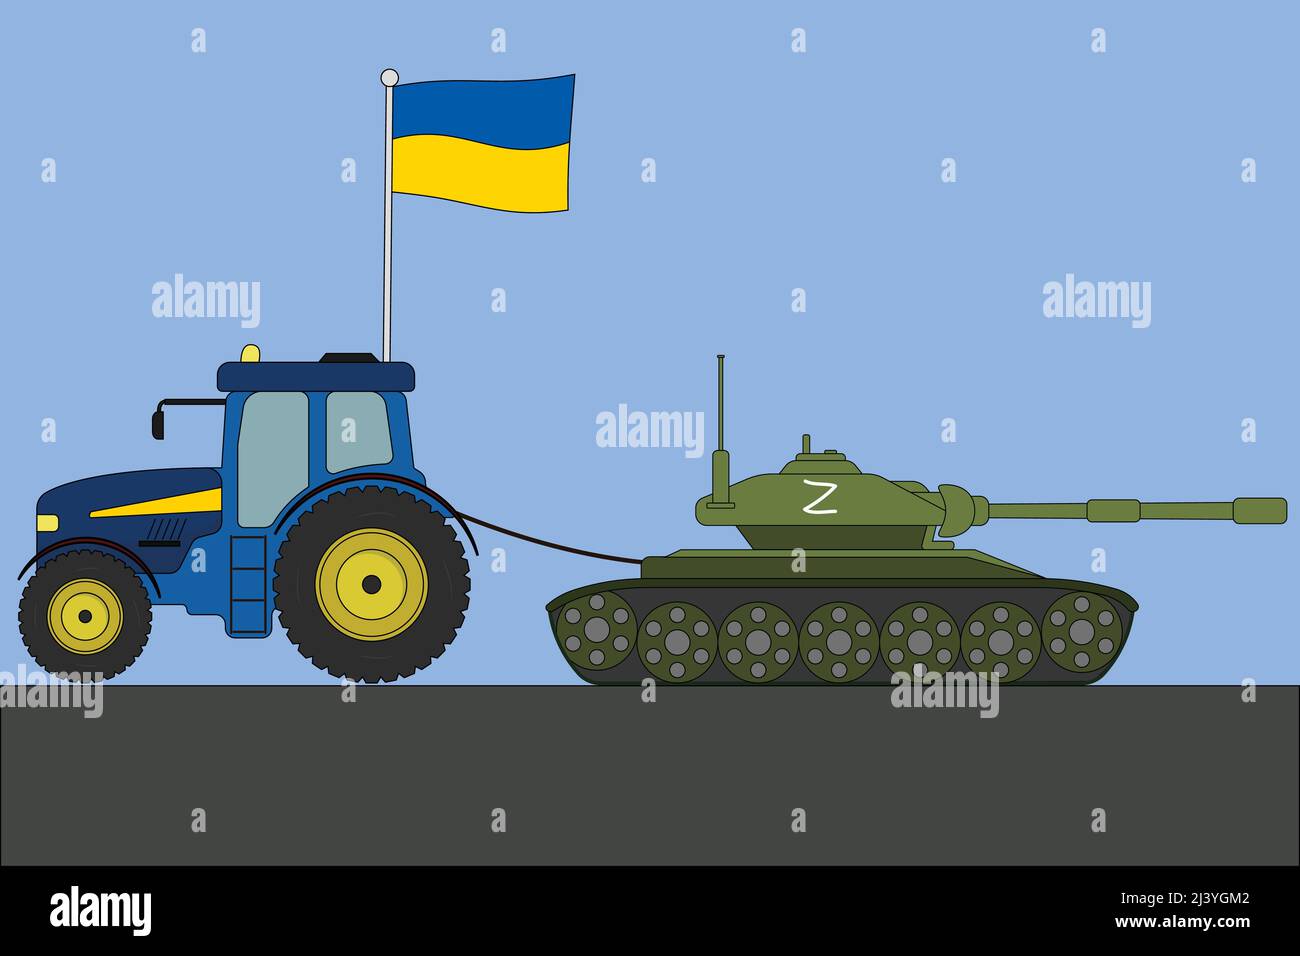 Ukrainischer Traktor schlepper einen Tank mit einem russischen Tank mit einem Z-Symbol Vektor-Illustration Stock Vektor